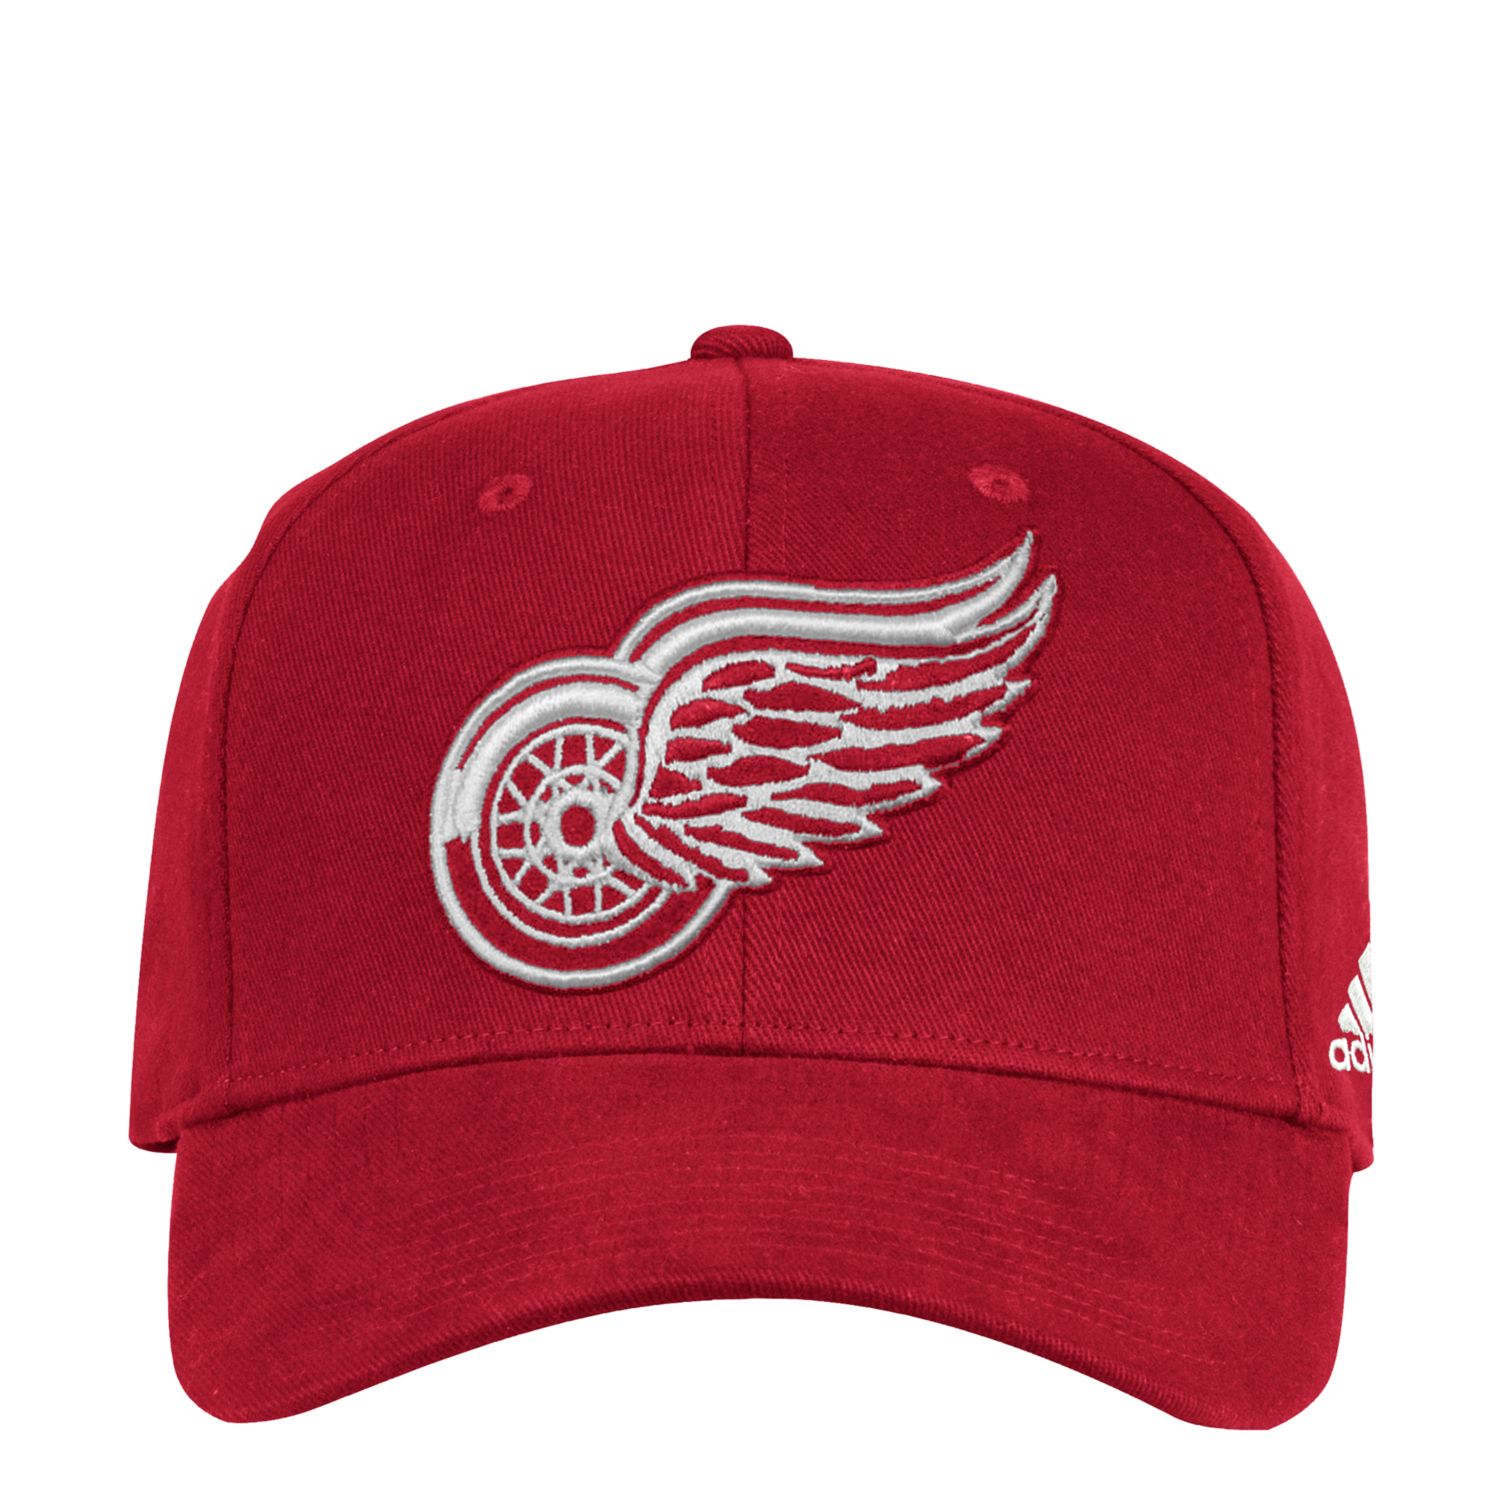 detroit red wings cap